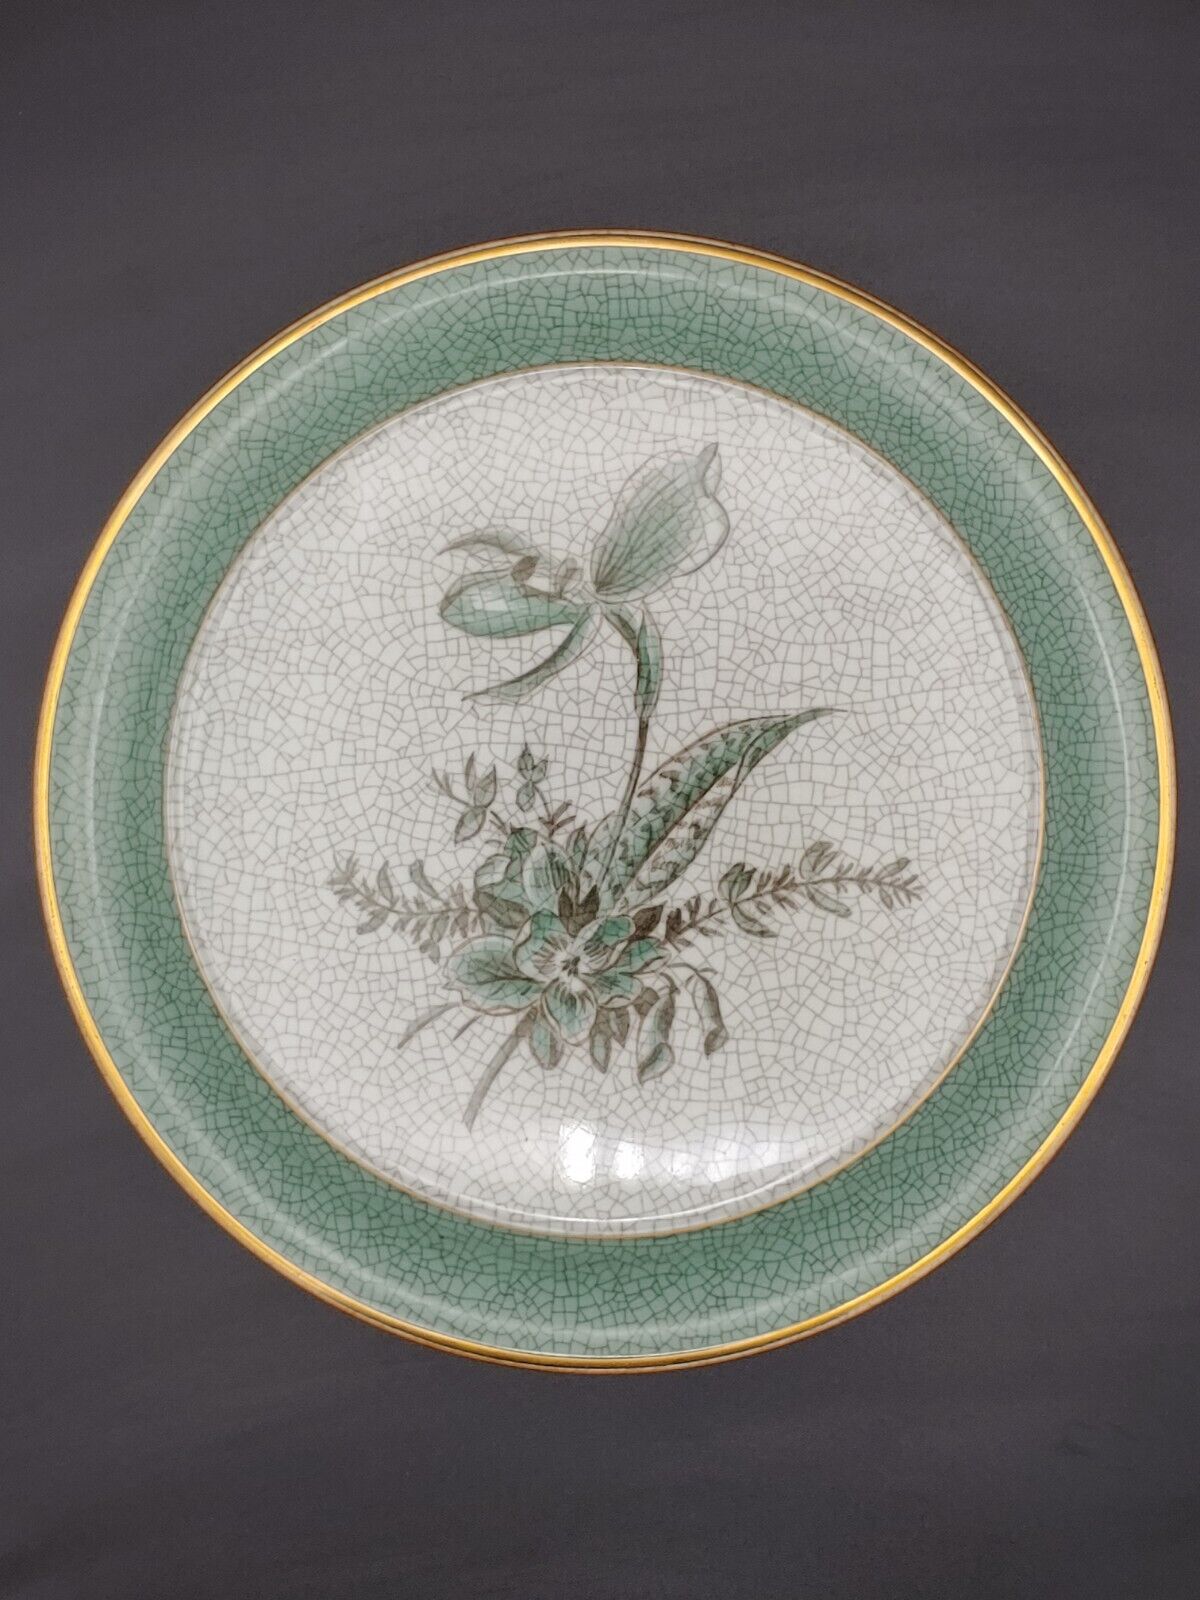 Vintage Denmark Royal Copenhagen Porcelain Cracks Glazed Painted Art Plate Dish